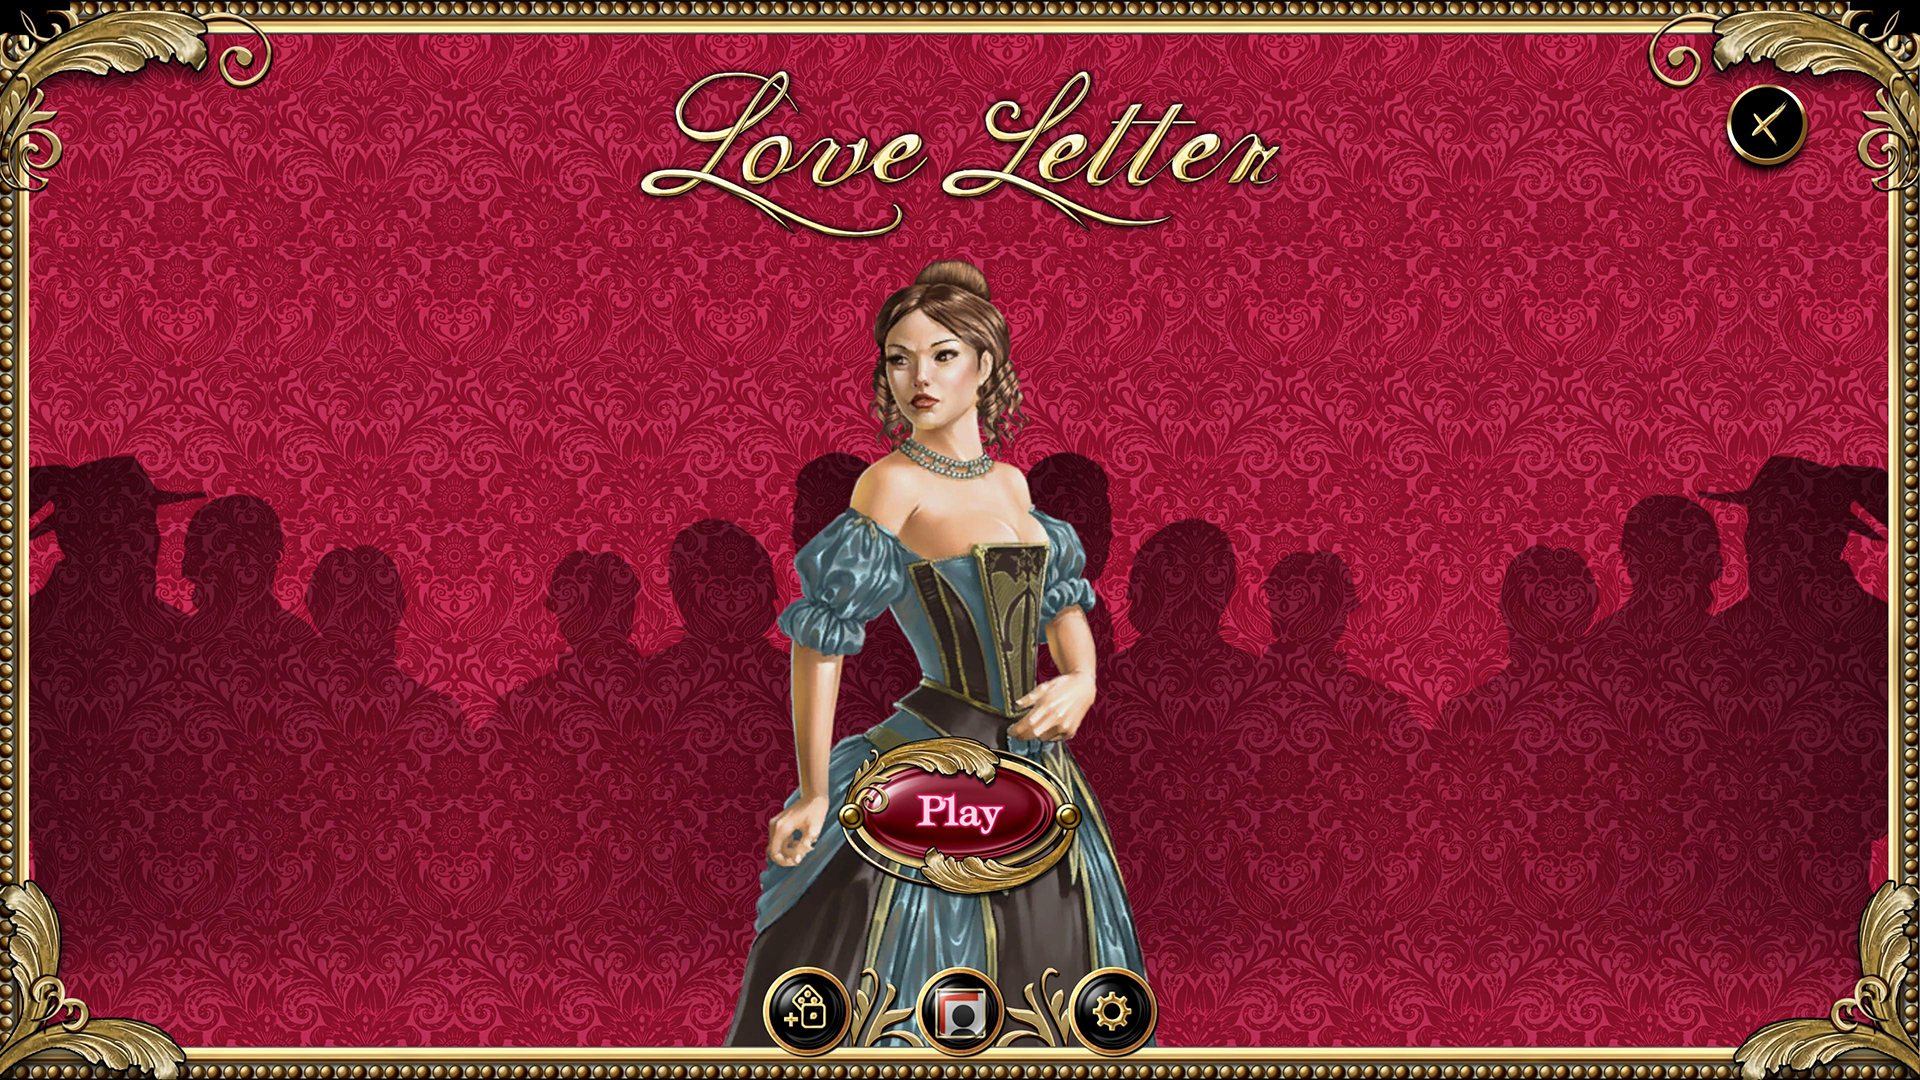 Love Letter Steam CD Key 0.26$